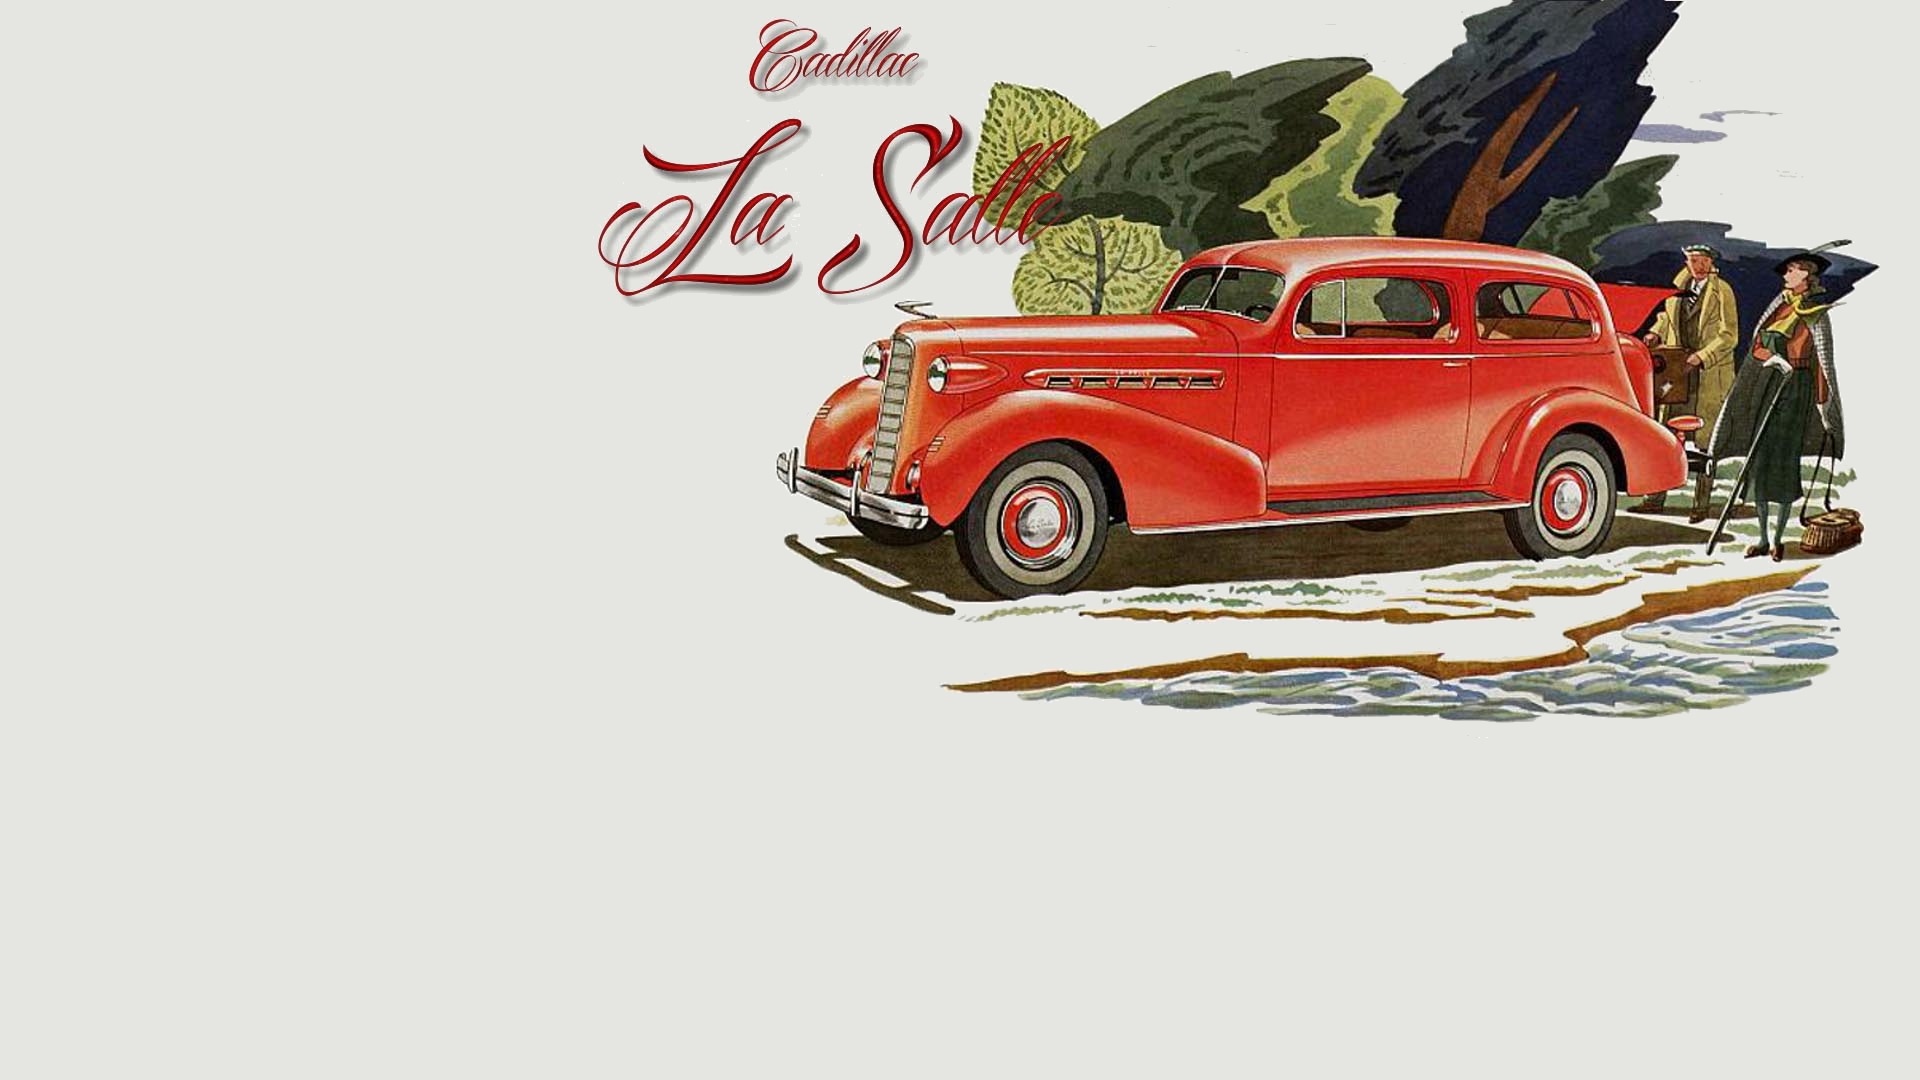 Descarga gratuita de fondo de pantalla para móvil de Cadillac La Salle, Cadillac, Vehículos.